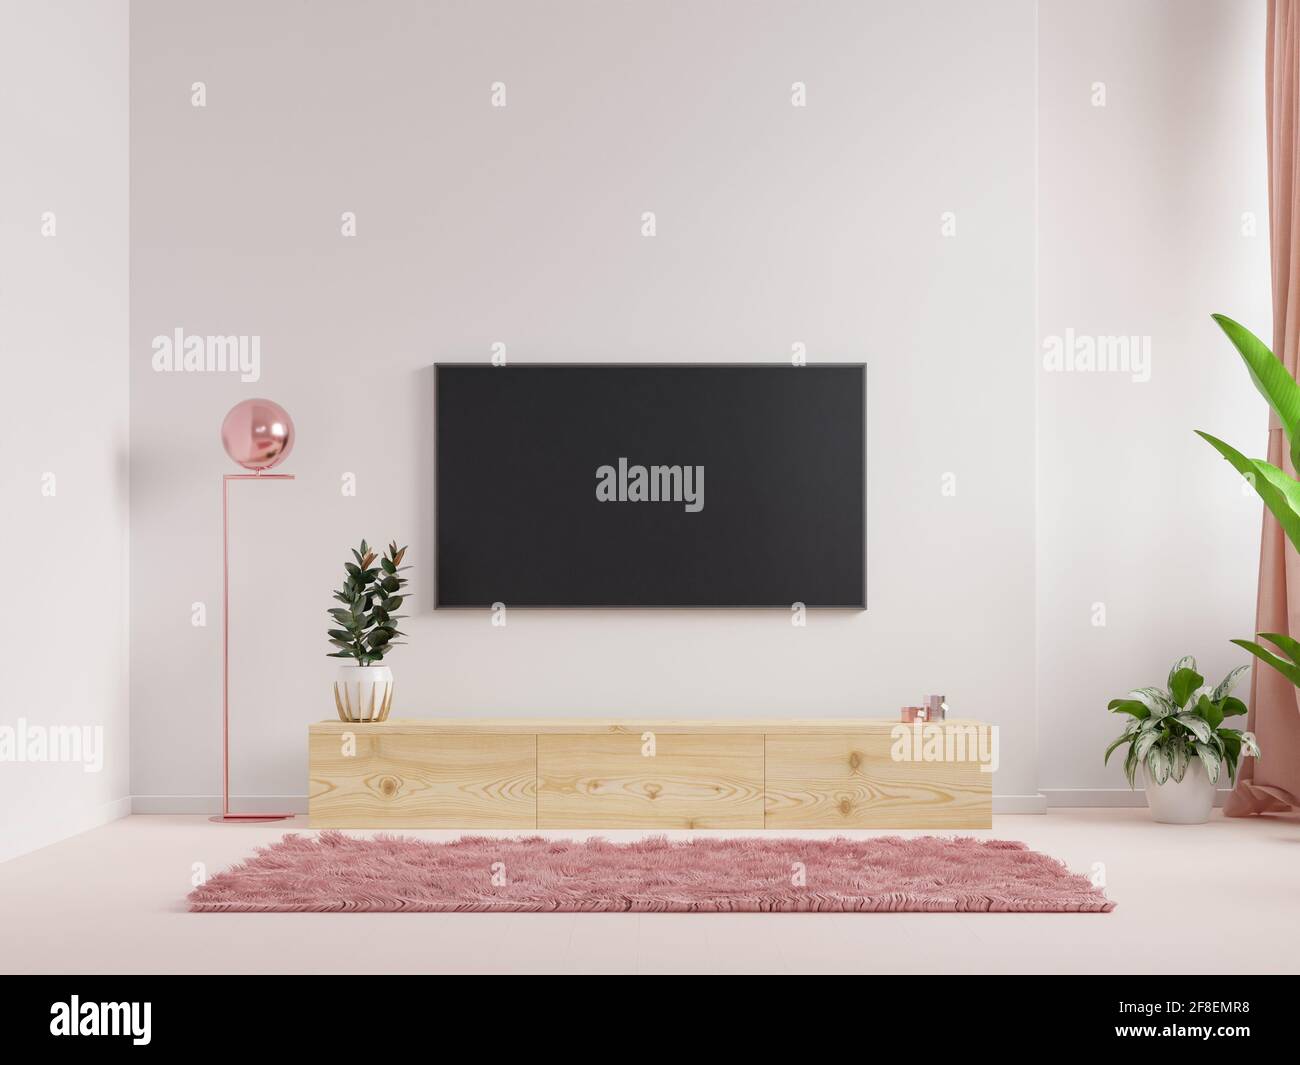 Montage mural d'une TV dans un salon avec une paroi blanche.rendu 3d Banque D'Images